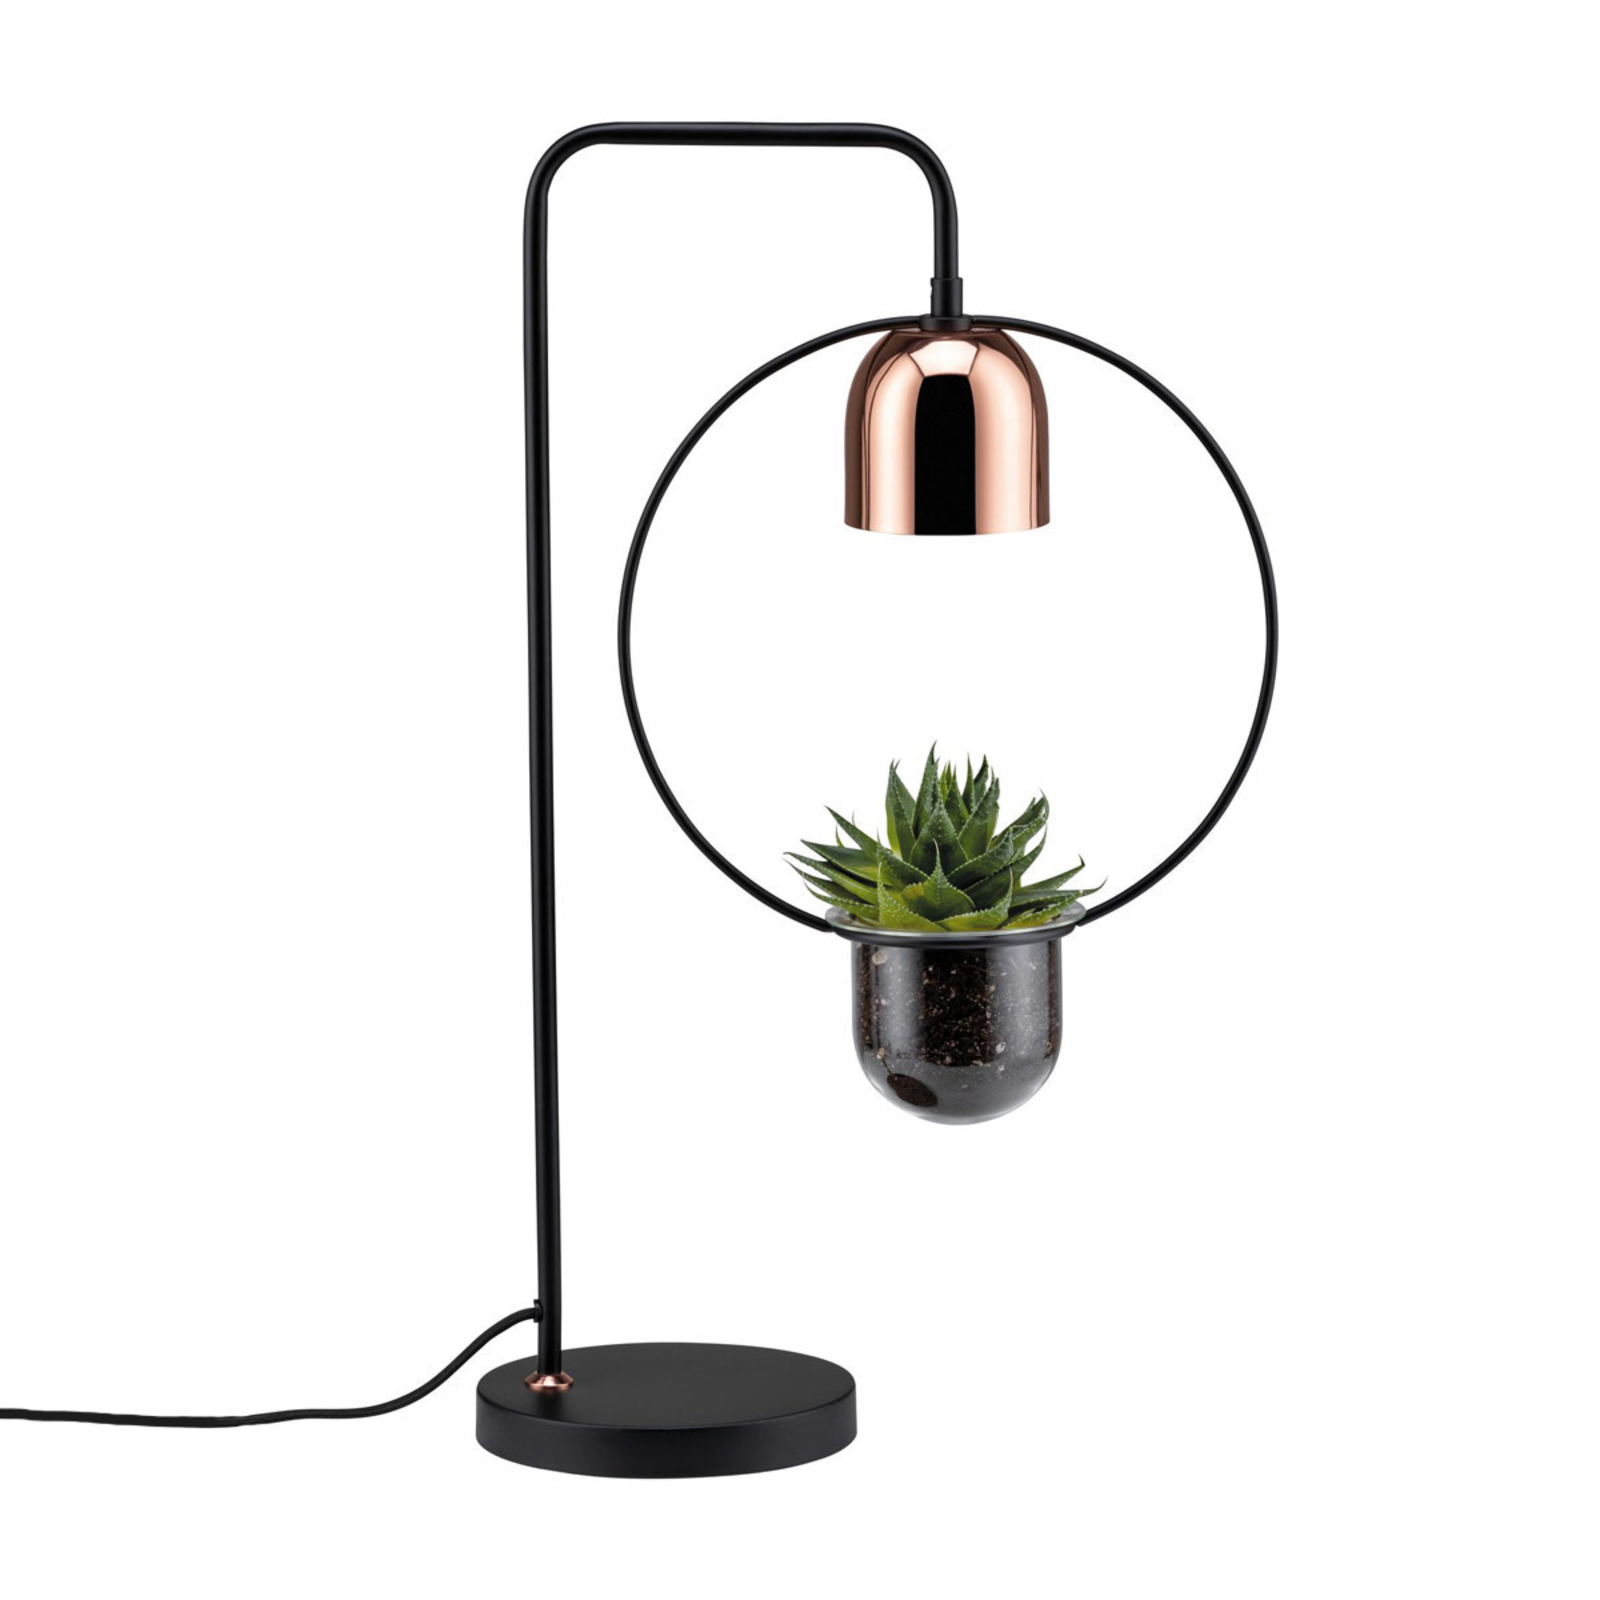 Paulmann lampada da tavolo Fanja con vaso piante